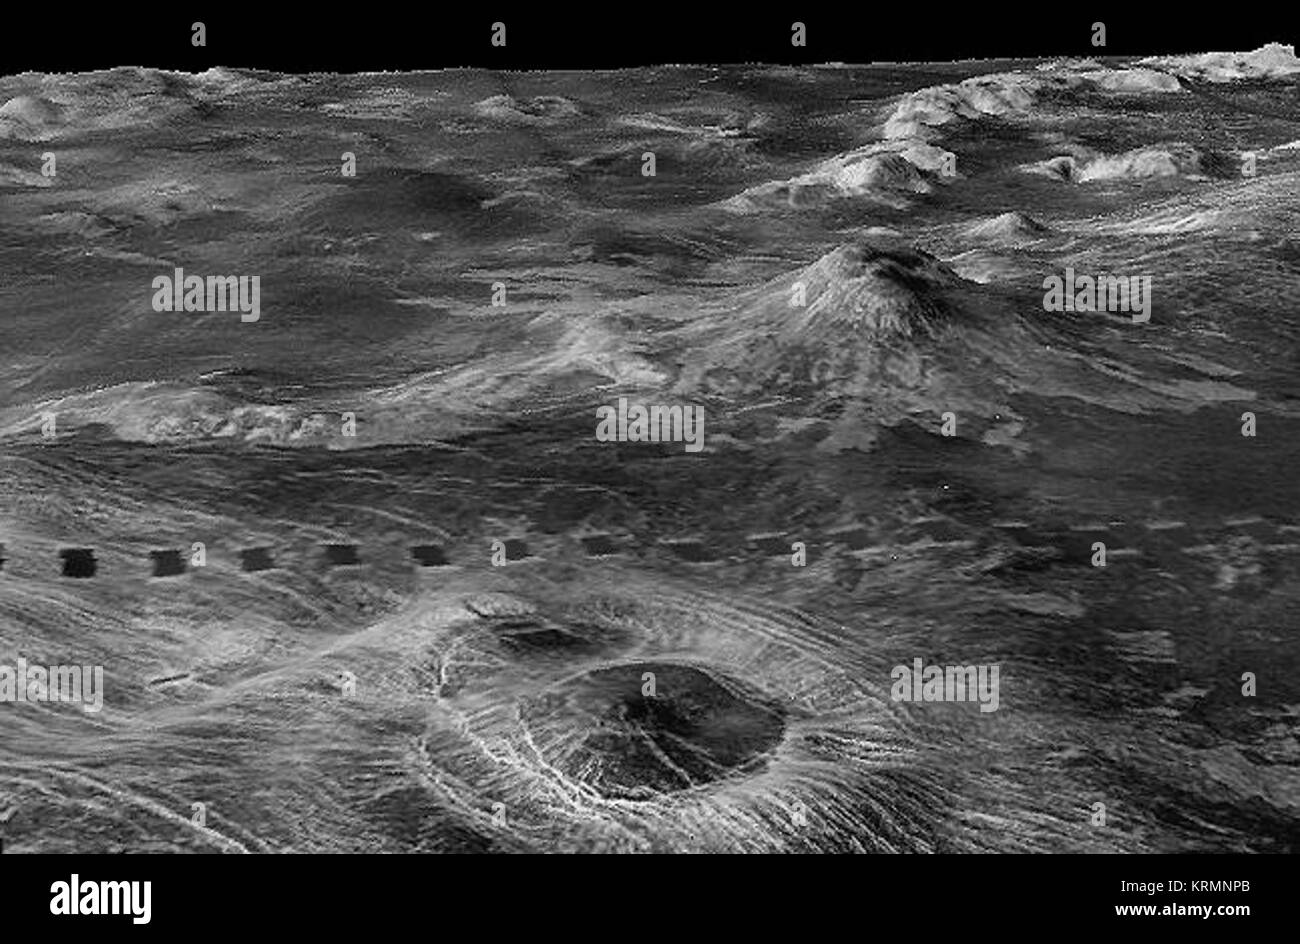 PIA00095 perspektivische Ansichten der Venerischen Terrains aus reduzierter Auflösung Links Suche synthetische Apertur Radar Bilder mit höhenzone Daten der Raumsonde Magellan zusammengeführt Stockfoto